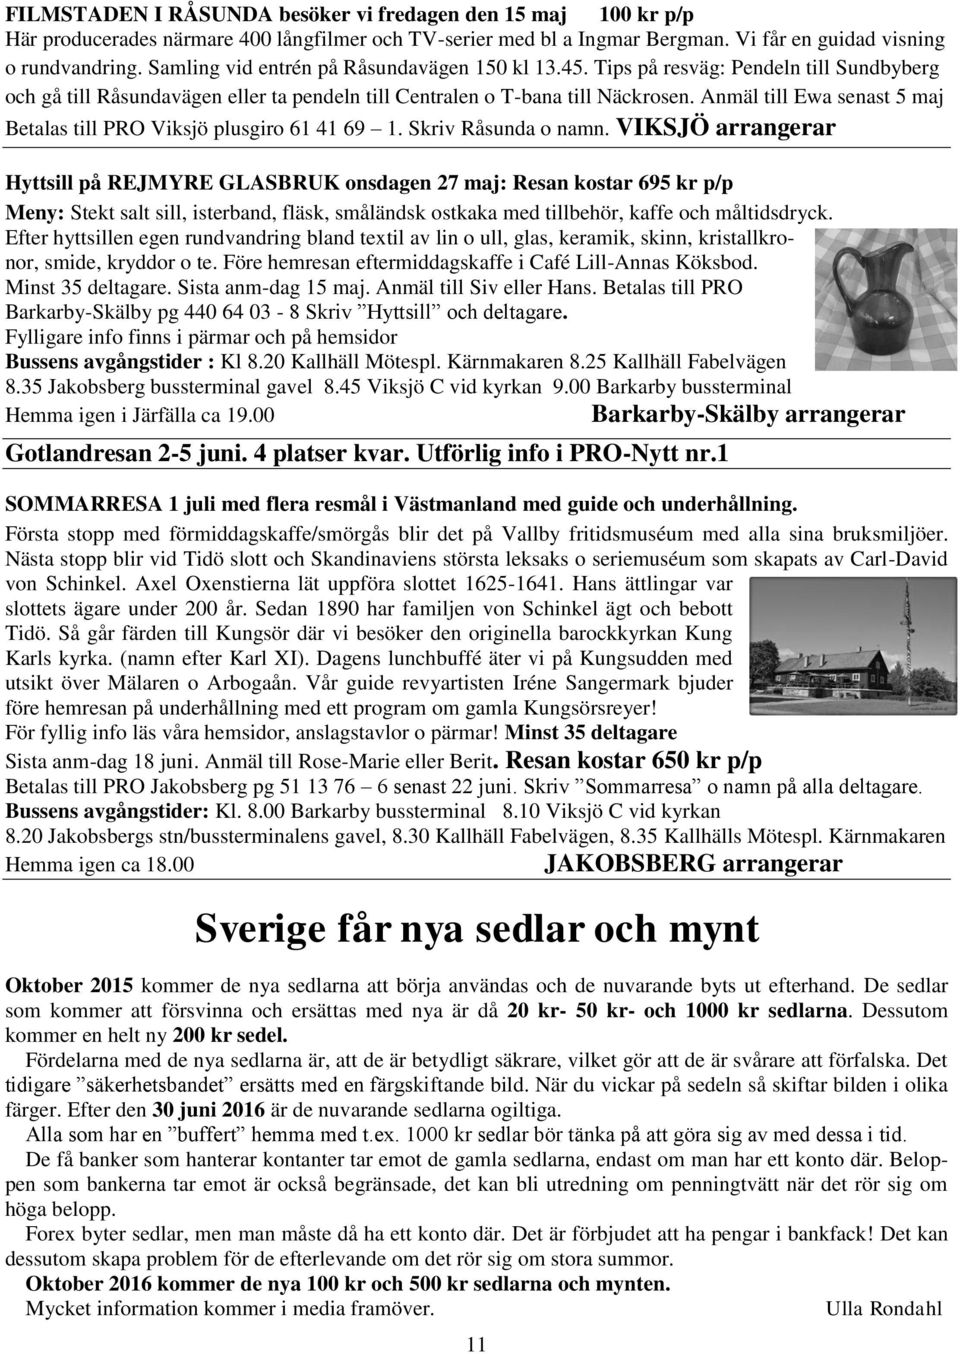 Anmäl till Ewa senast 5 maj Betalas till PRO Viksjö plusgiro 61 41 69 1. Skriv Råsunda o namn.